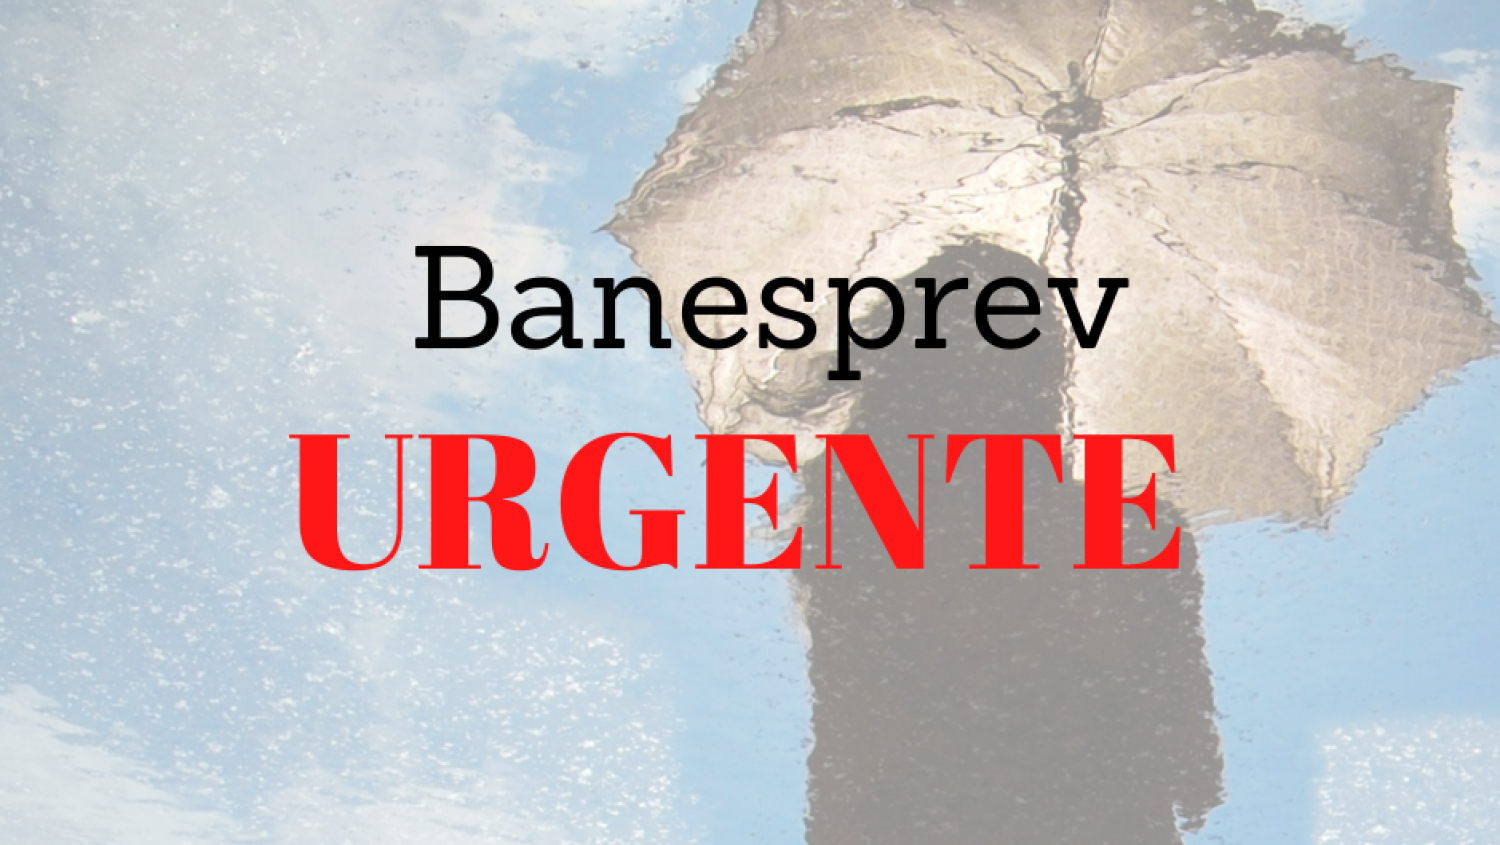 Últimas e boas notícias sobre Banesprev